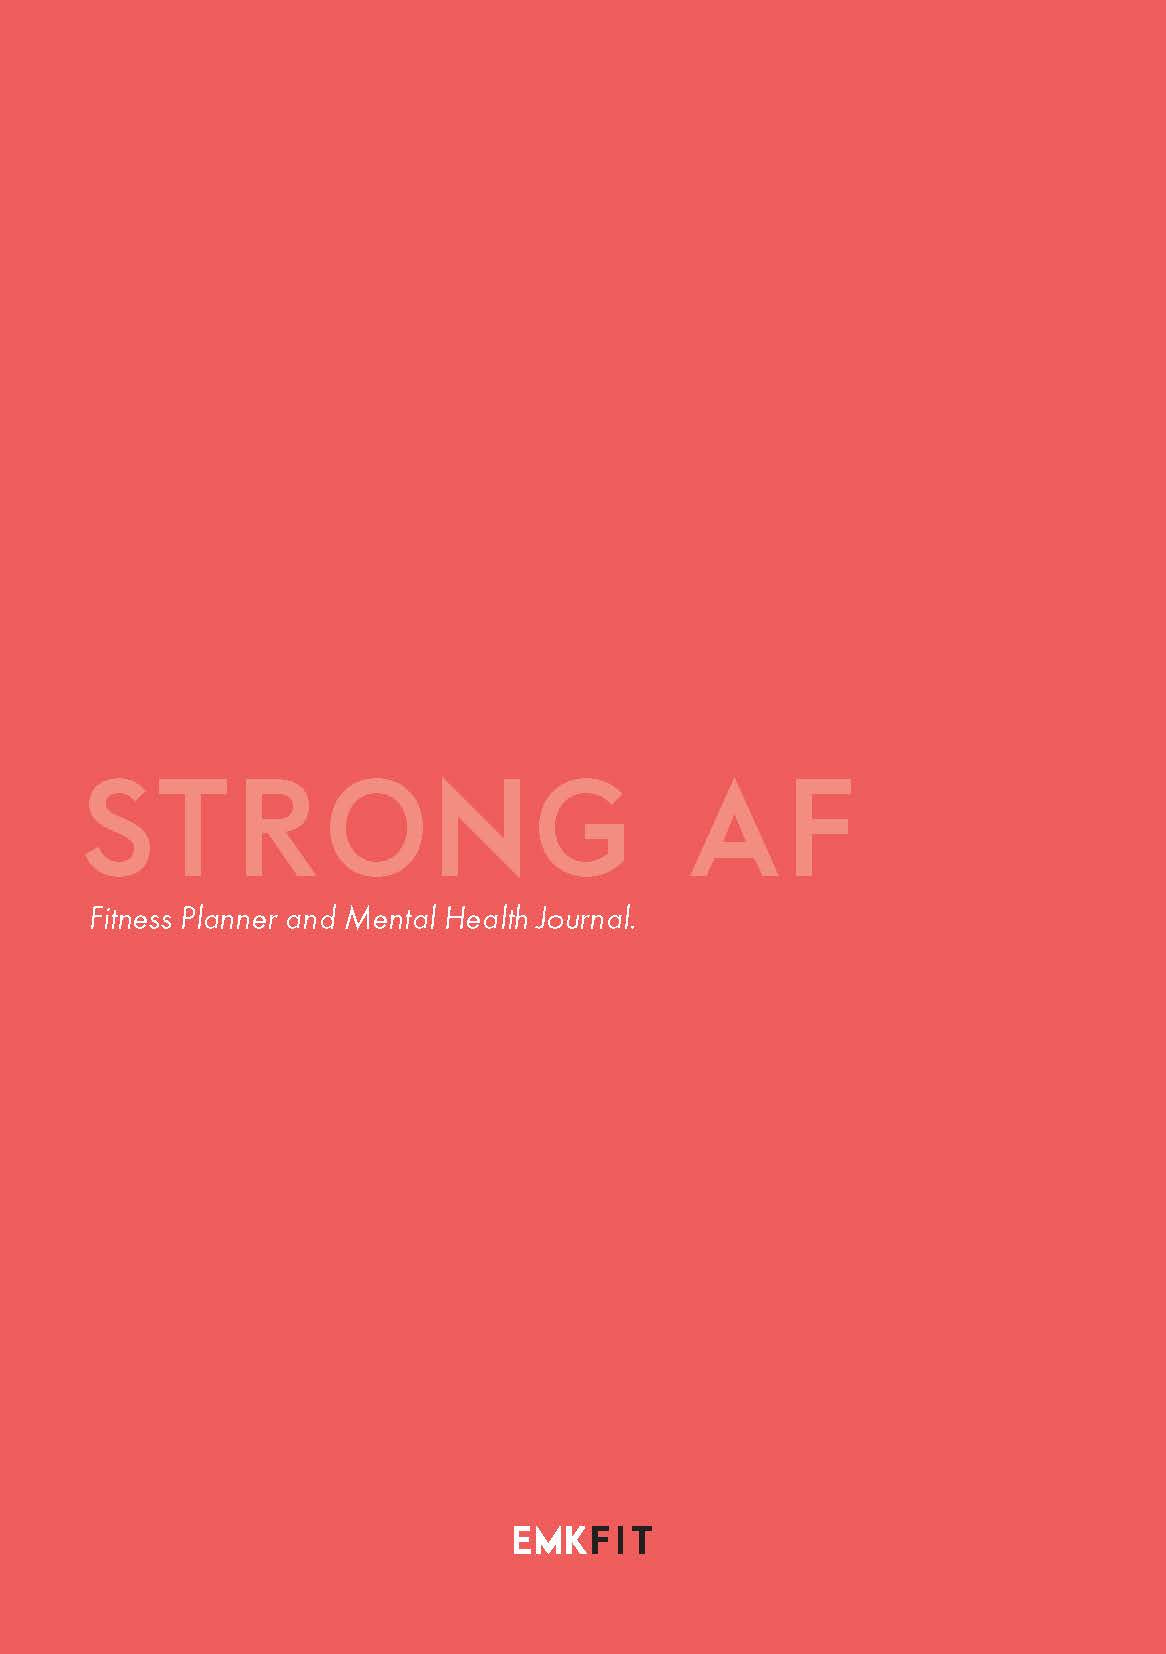 STRONG AF - FITNESS + MENTAL HEALTH JOURNAL